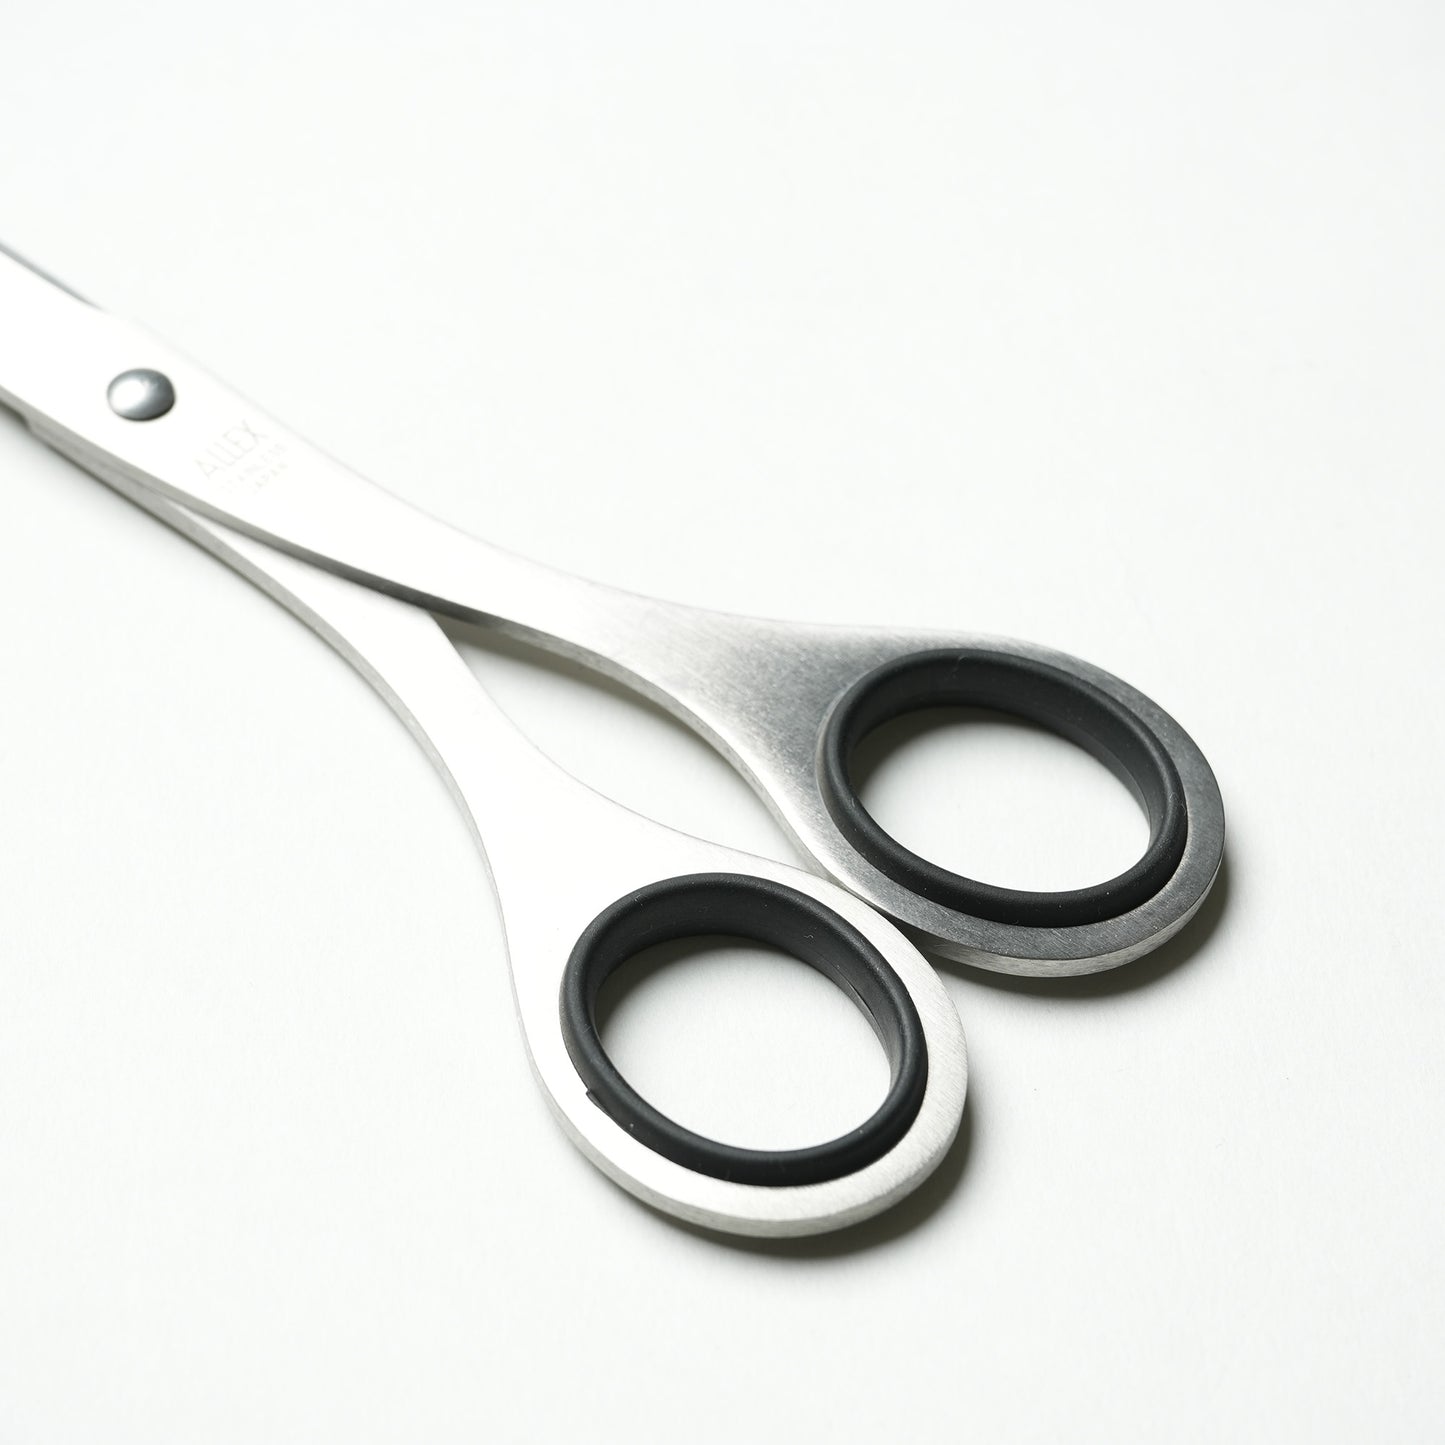 ALLEX Scissors